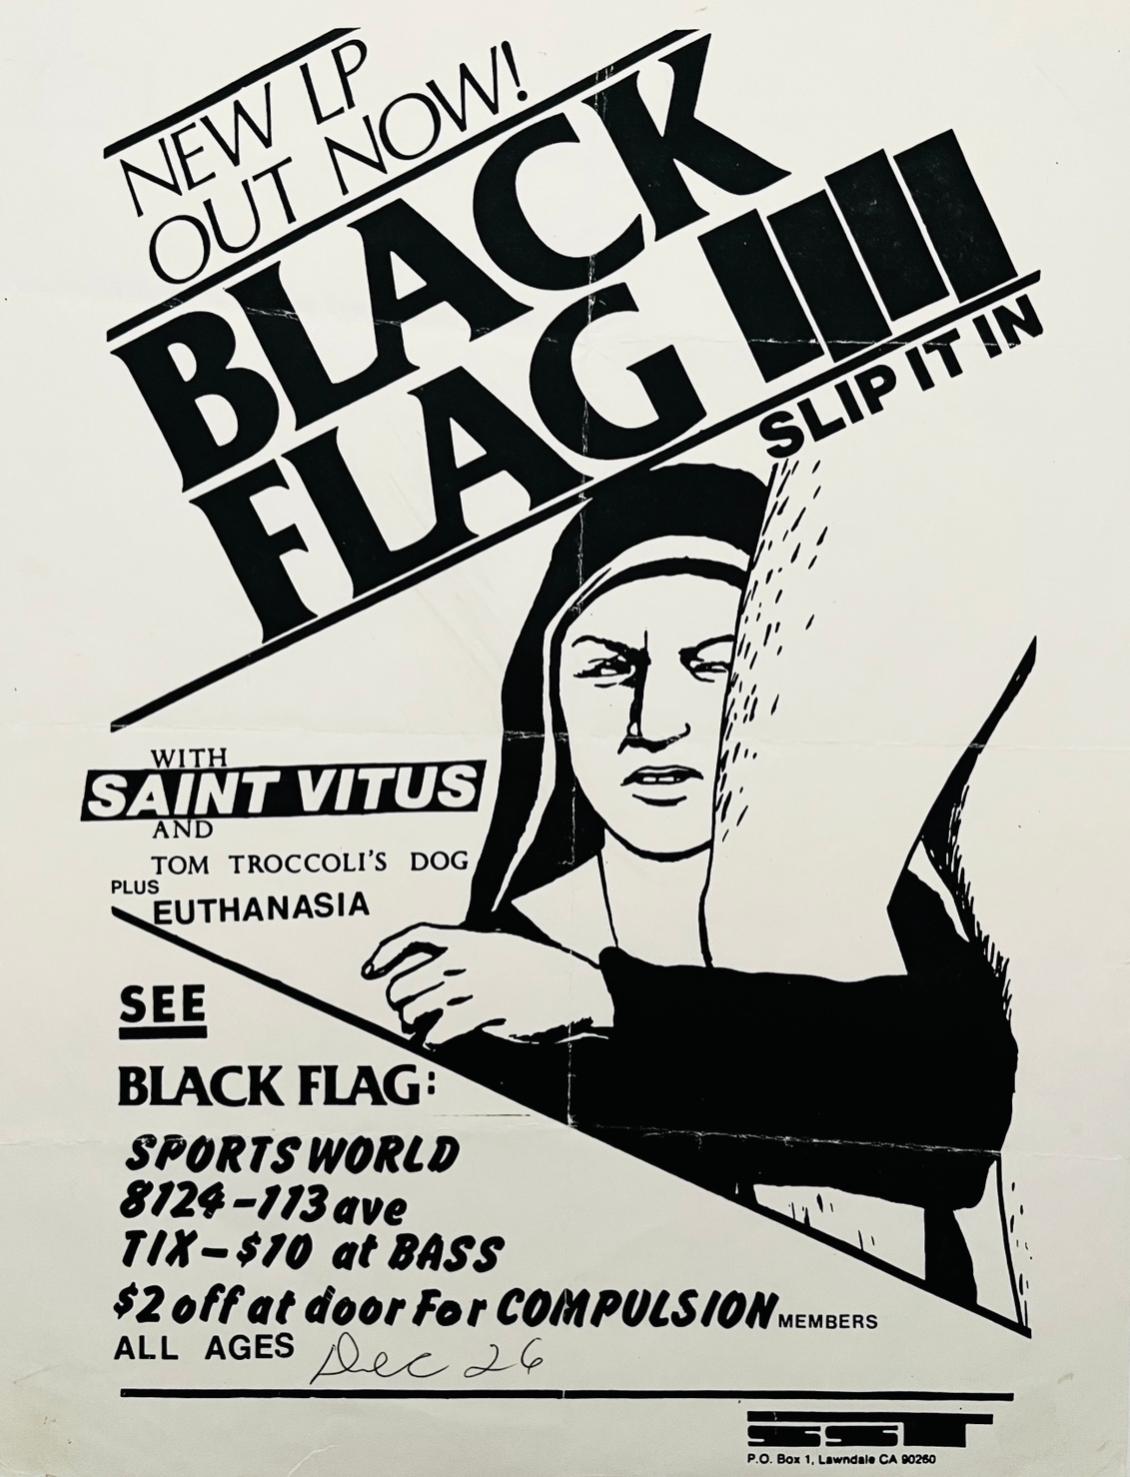 Raymond Pettibon Drapeau noir :
Rare flyer promotionnel de Black Flag illustré par Raymond Pettibon et publié en 1984 pour annoncer la sortie de l'album de Black Flag "Slip It In".

Impression offset ; 8,5 x 11 pouces. 1984.
L'état général de